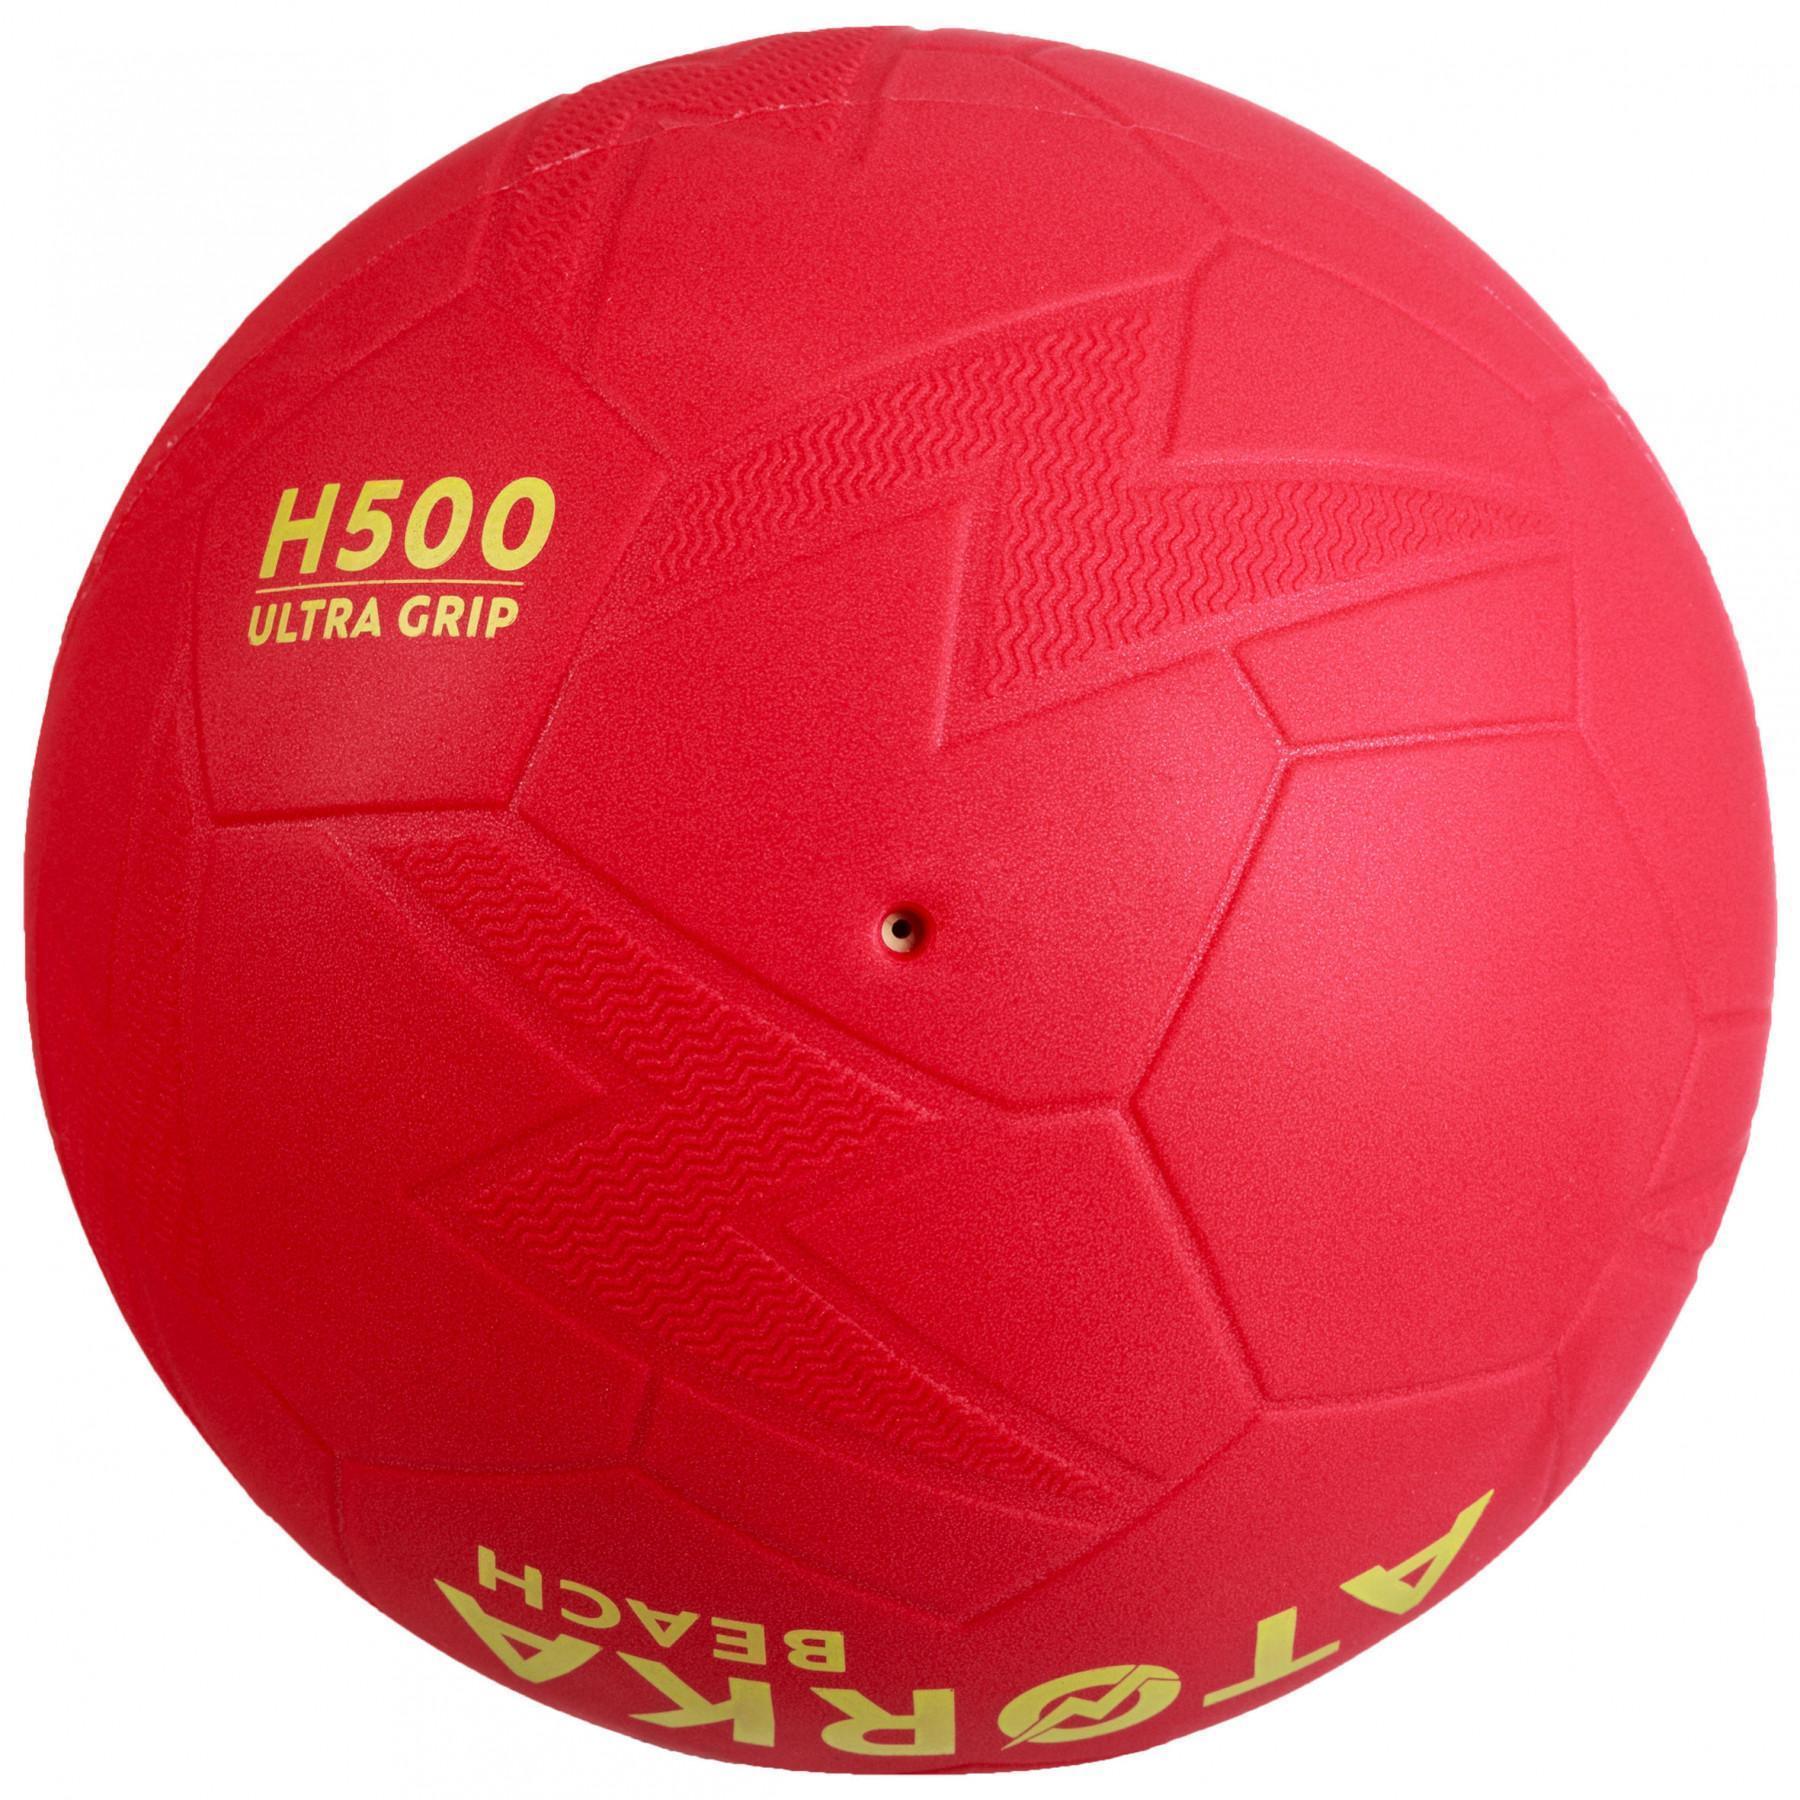 Ballon de beach handball Atorka HB500B - Taille 2